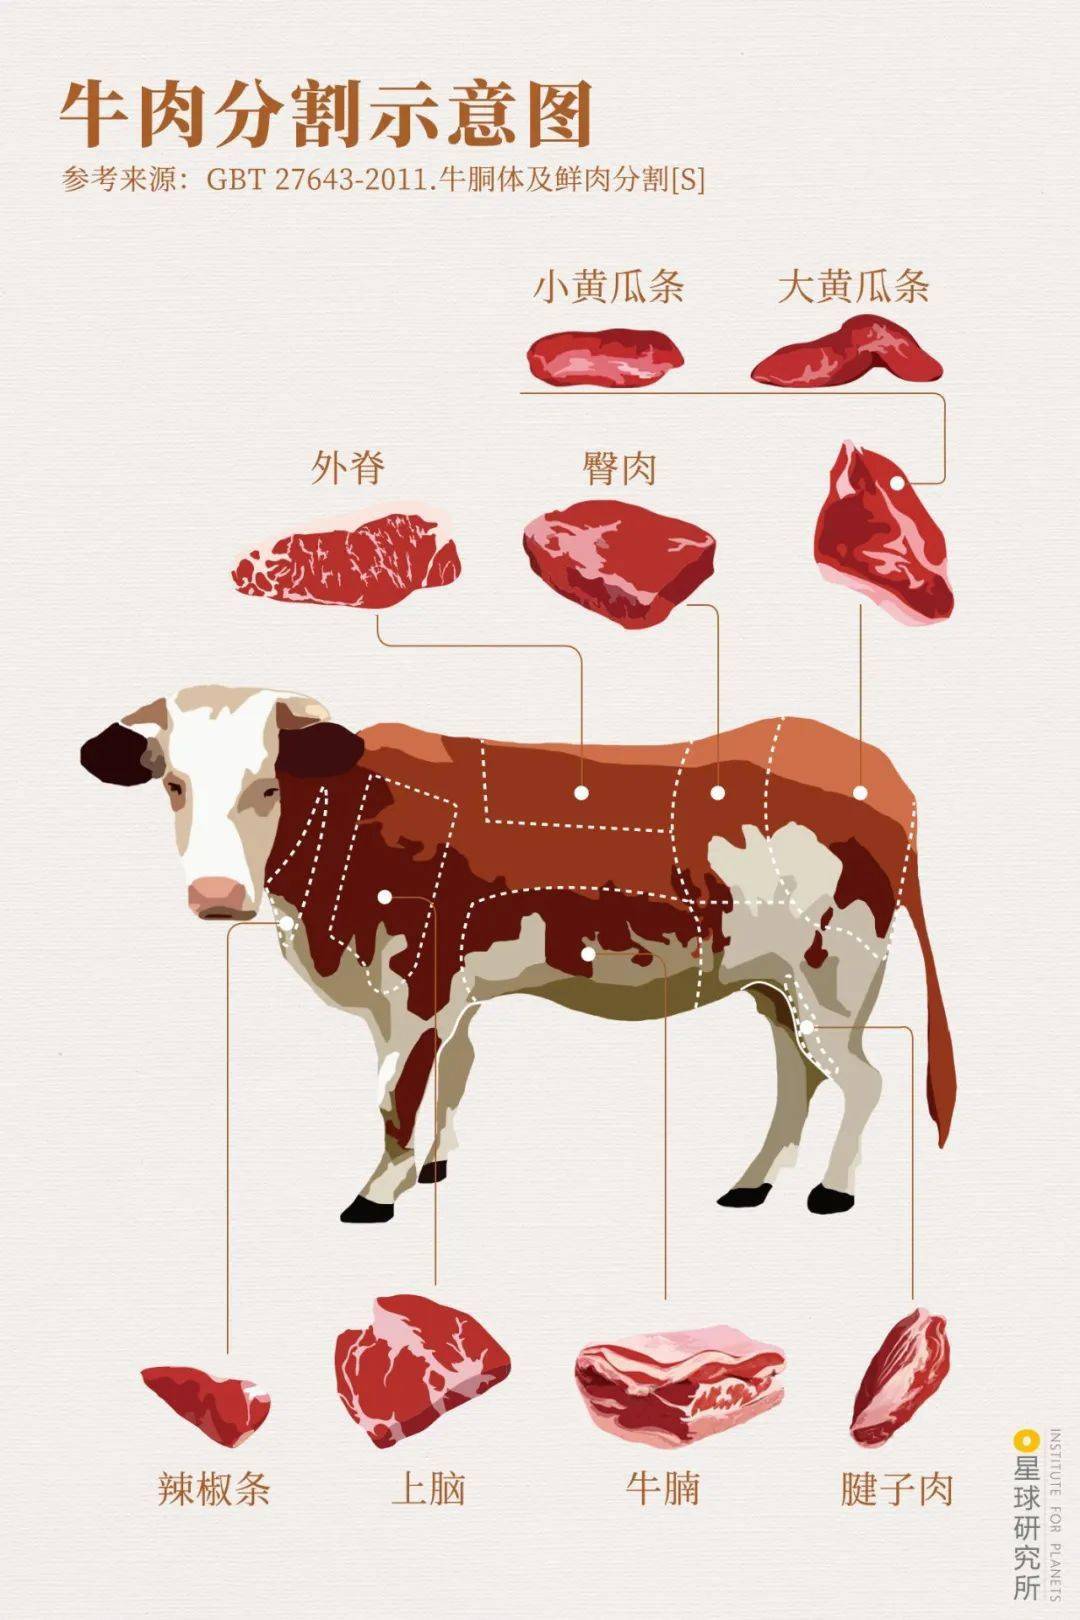 牛头主要富含胶原蛋白牛尾中肉和骨头的比例相当它们都适合炖煮熬汤